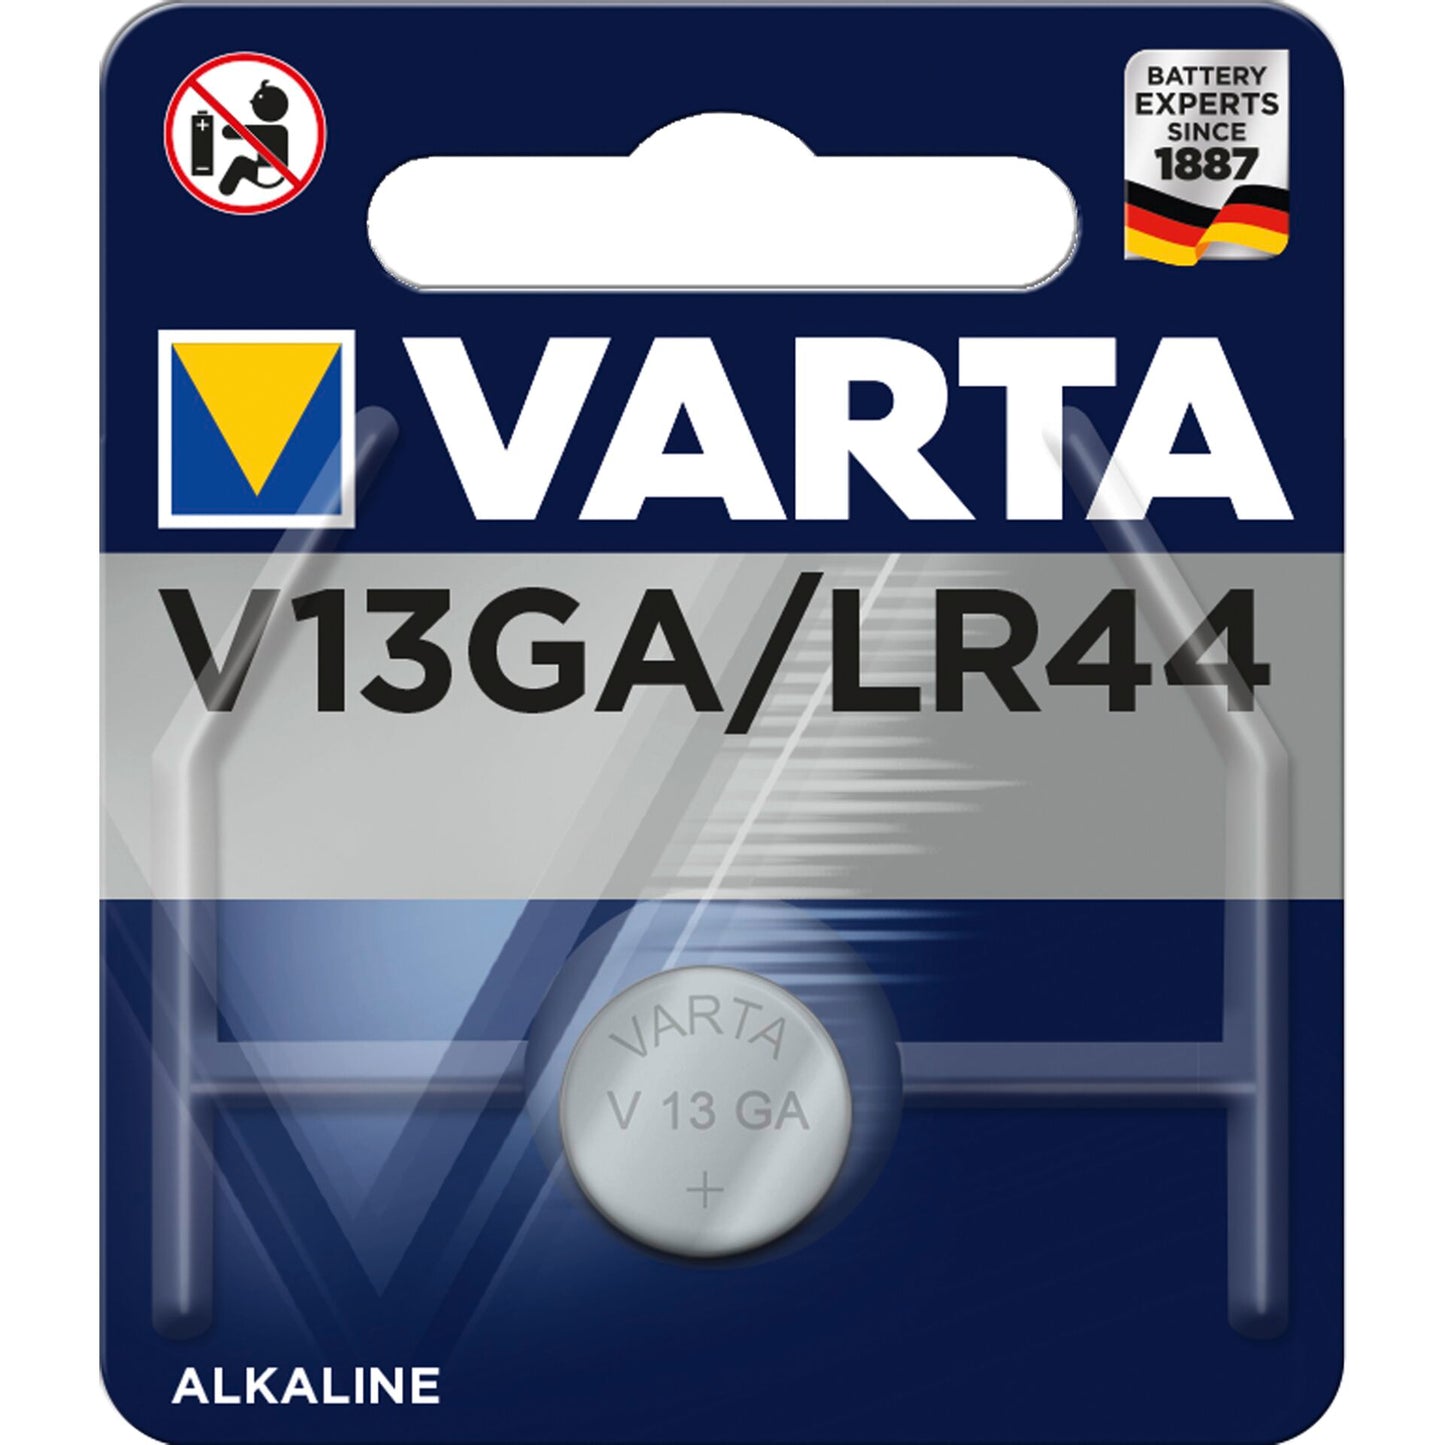 Varta 1x LR44 / V13GA 1.5V Alkaline Battery